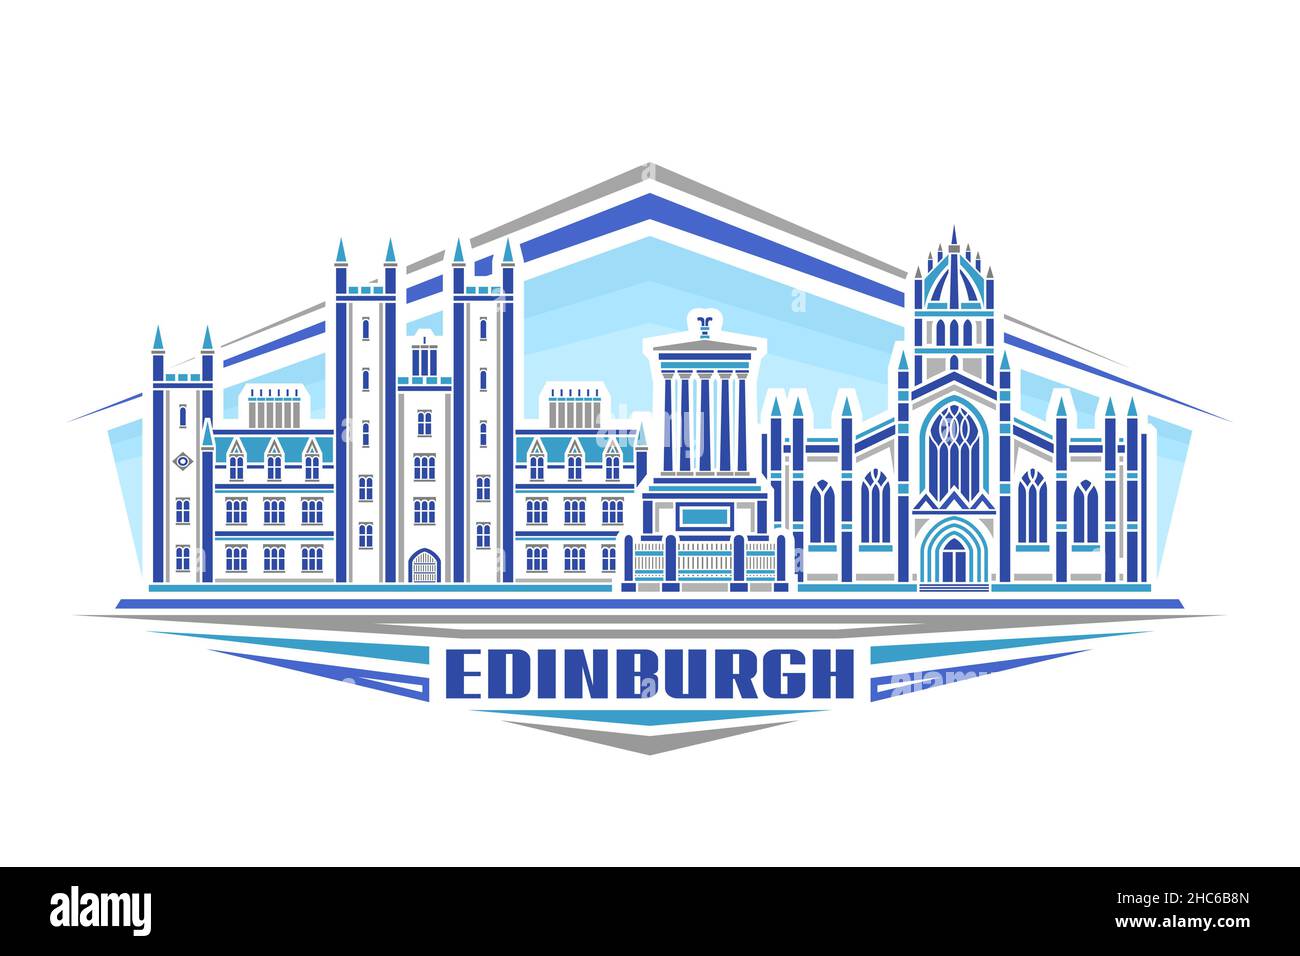 Vektor-Illustration von Edinburgh, horizontales Logo mit linearem Design berühmten edinburgh Stadtbild auf Tag Himmel Hintergrund, europäische Stadtlinie Kunst concep Stock Vektor